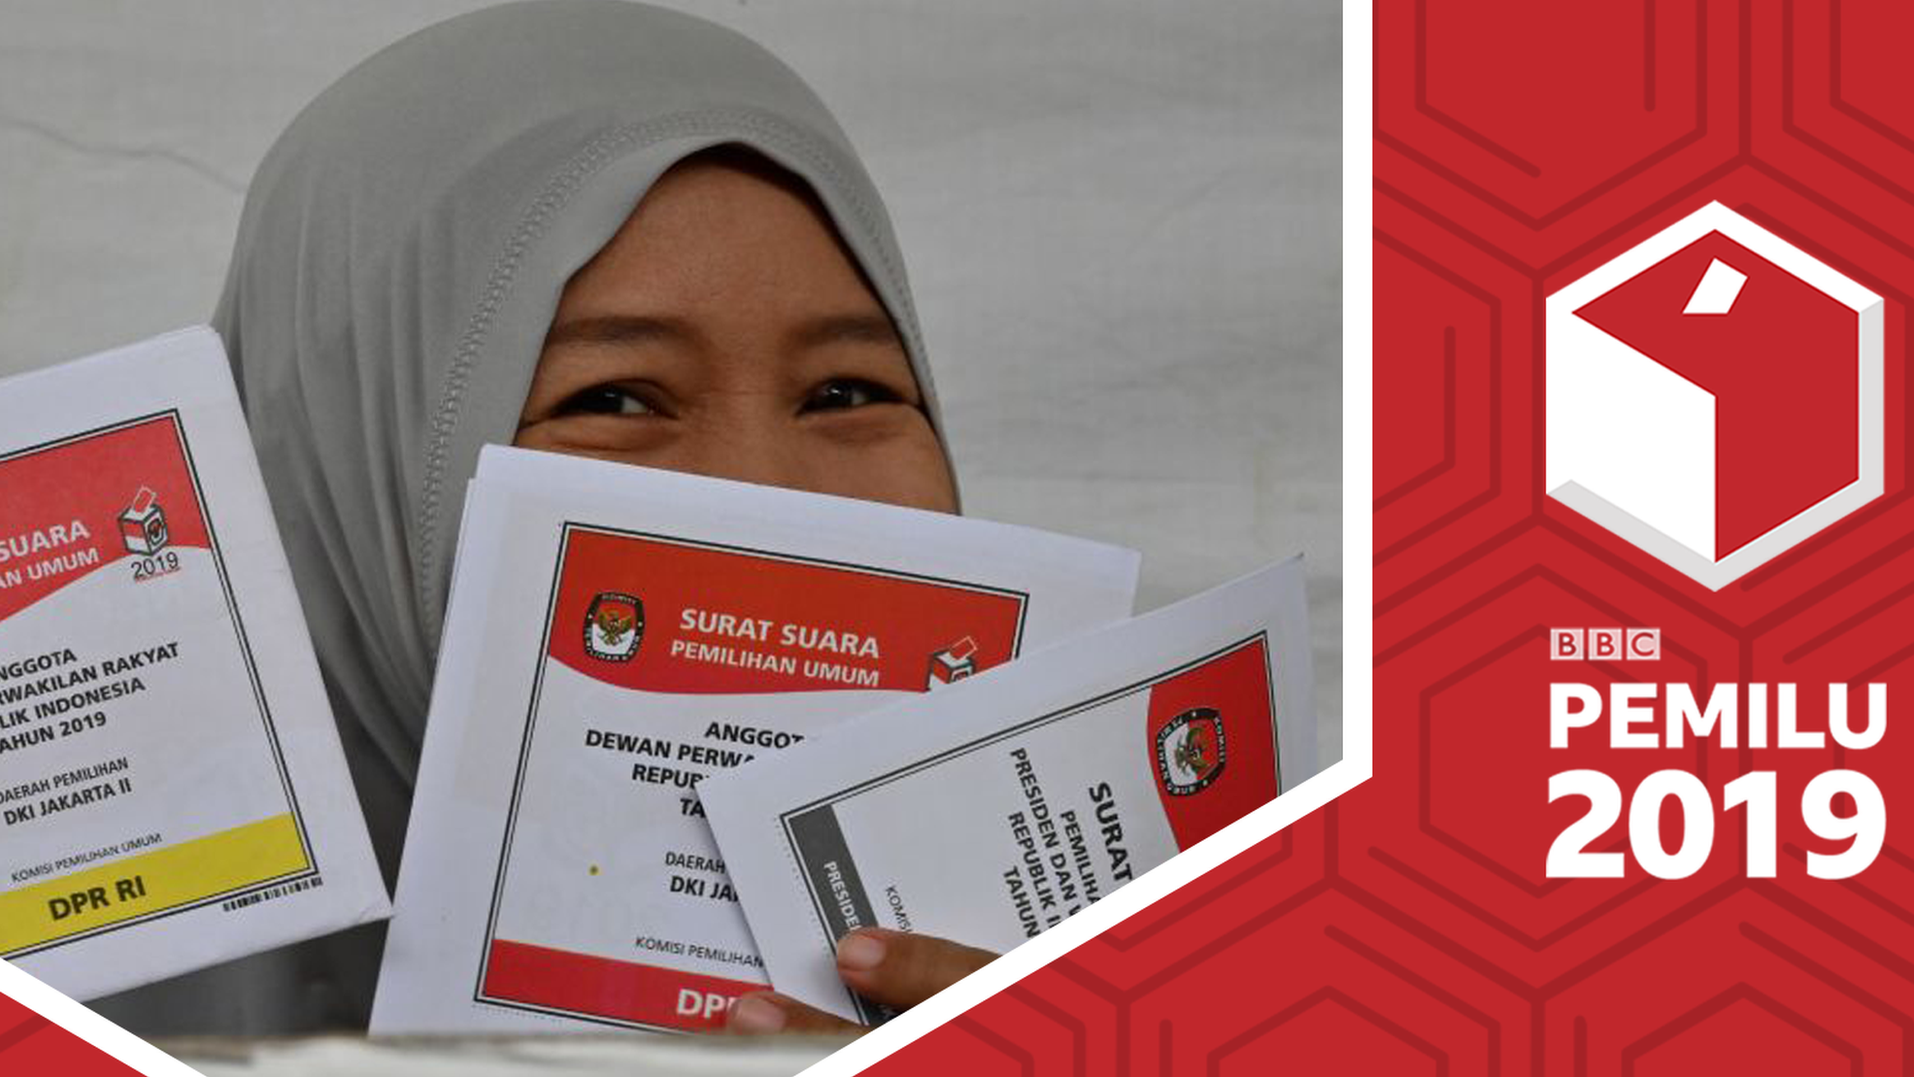 Pemilu 2019 Joko Widodo mengklaim dapat selamat dari sejumlah pemimpin negara